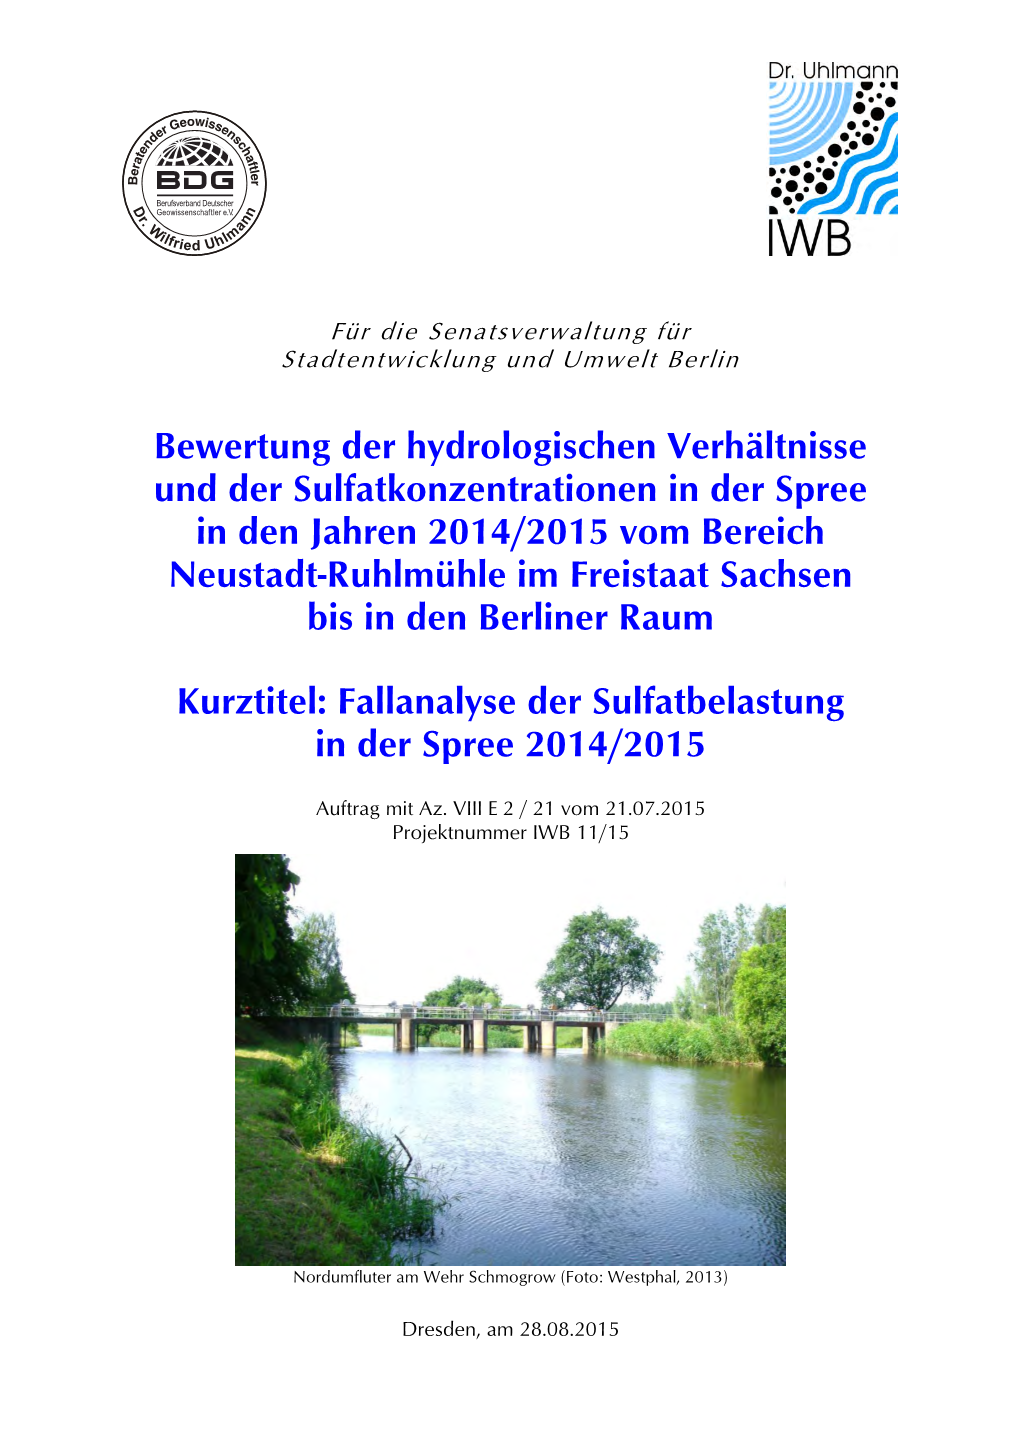 Sulfatkonzentration in Der Spree 2014/2015